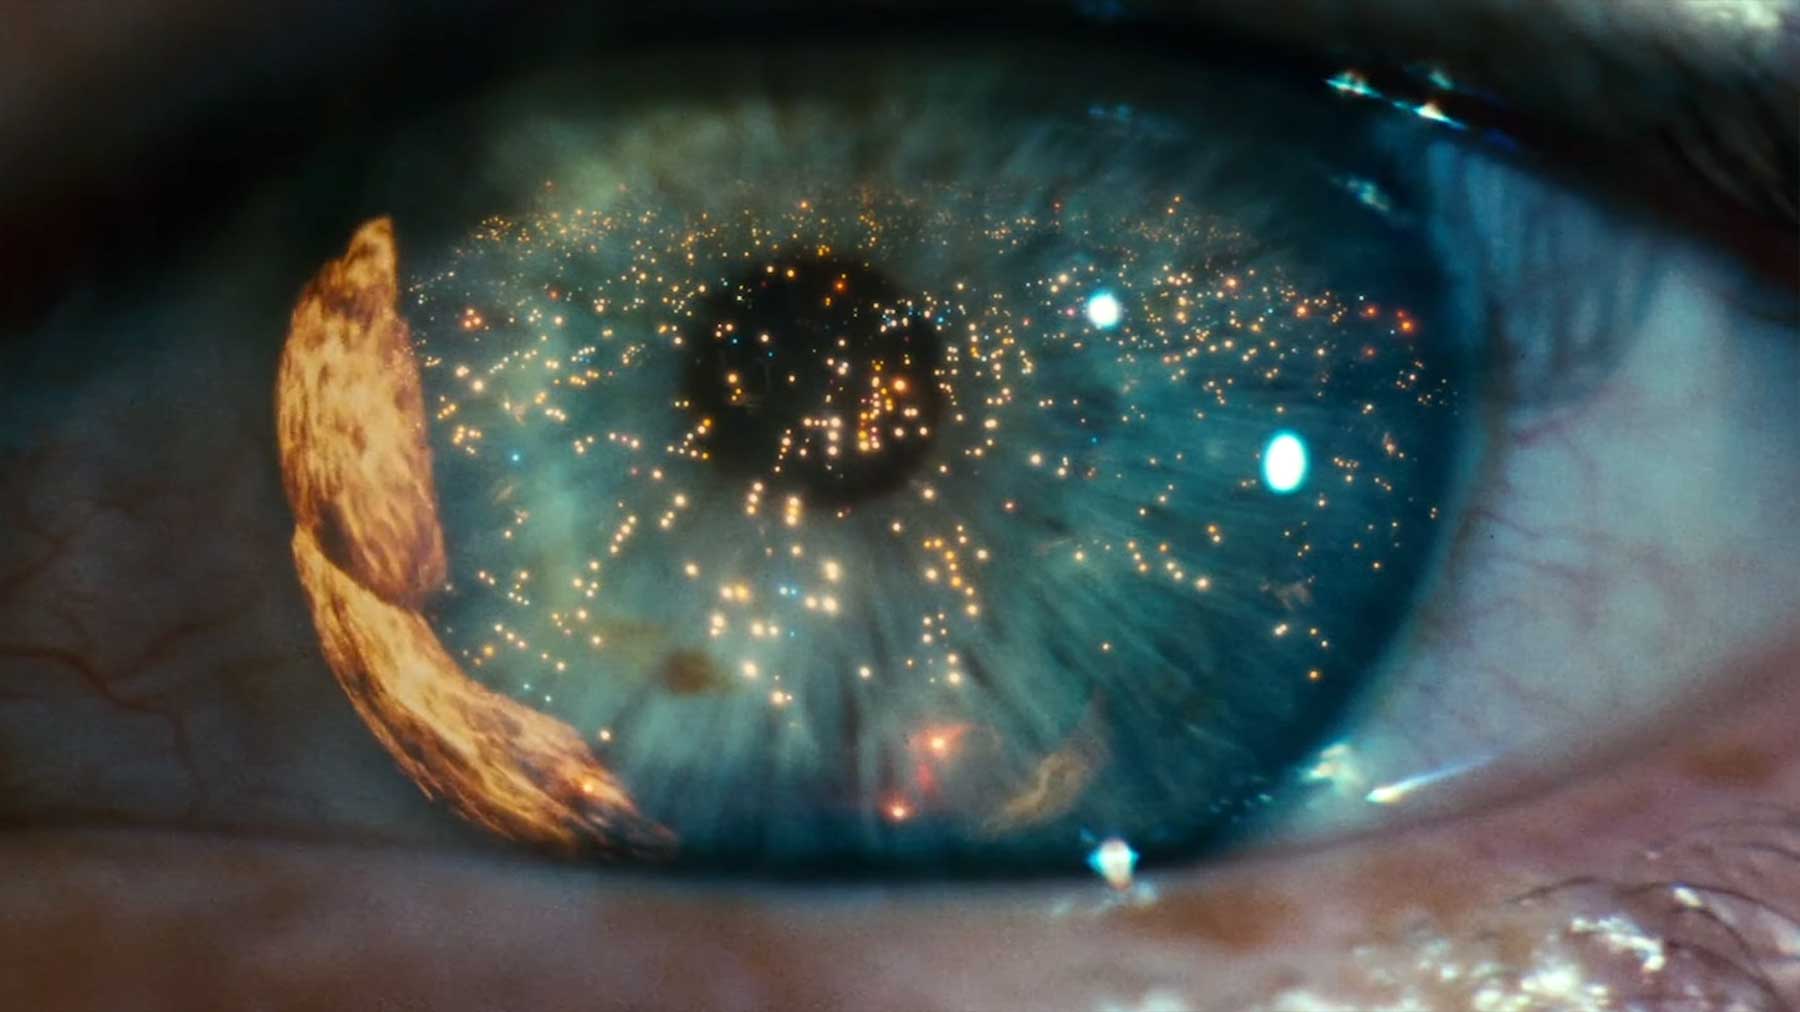 Einige der schönsten Aufnahmen von Ridley Scott ridley-scott-schoenste-aufnahmen-cinematography 